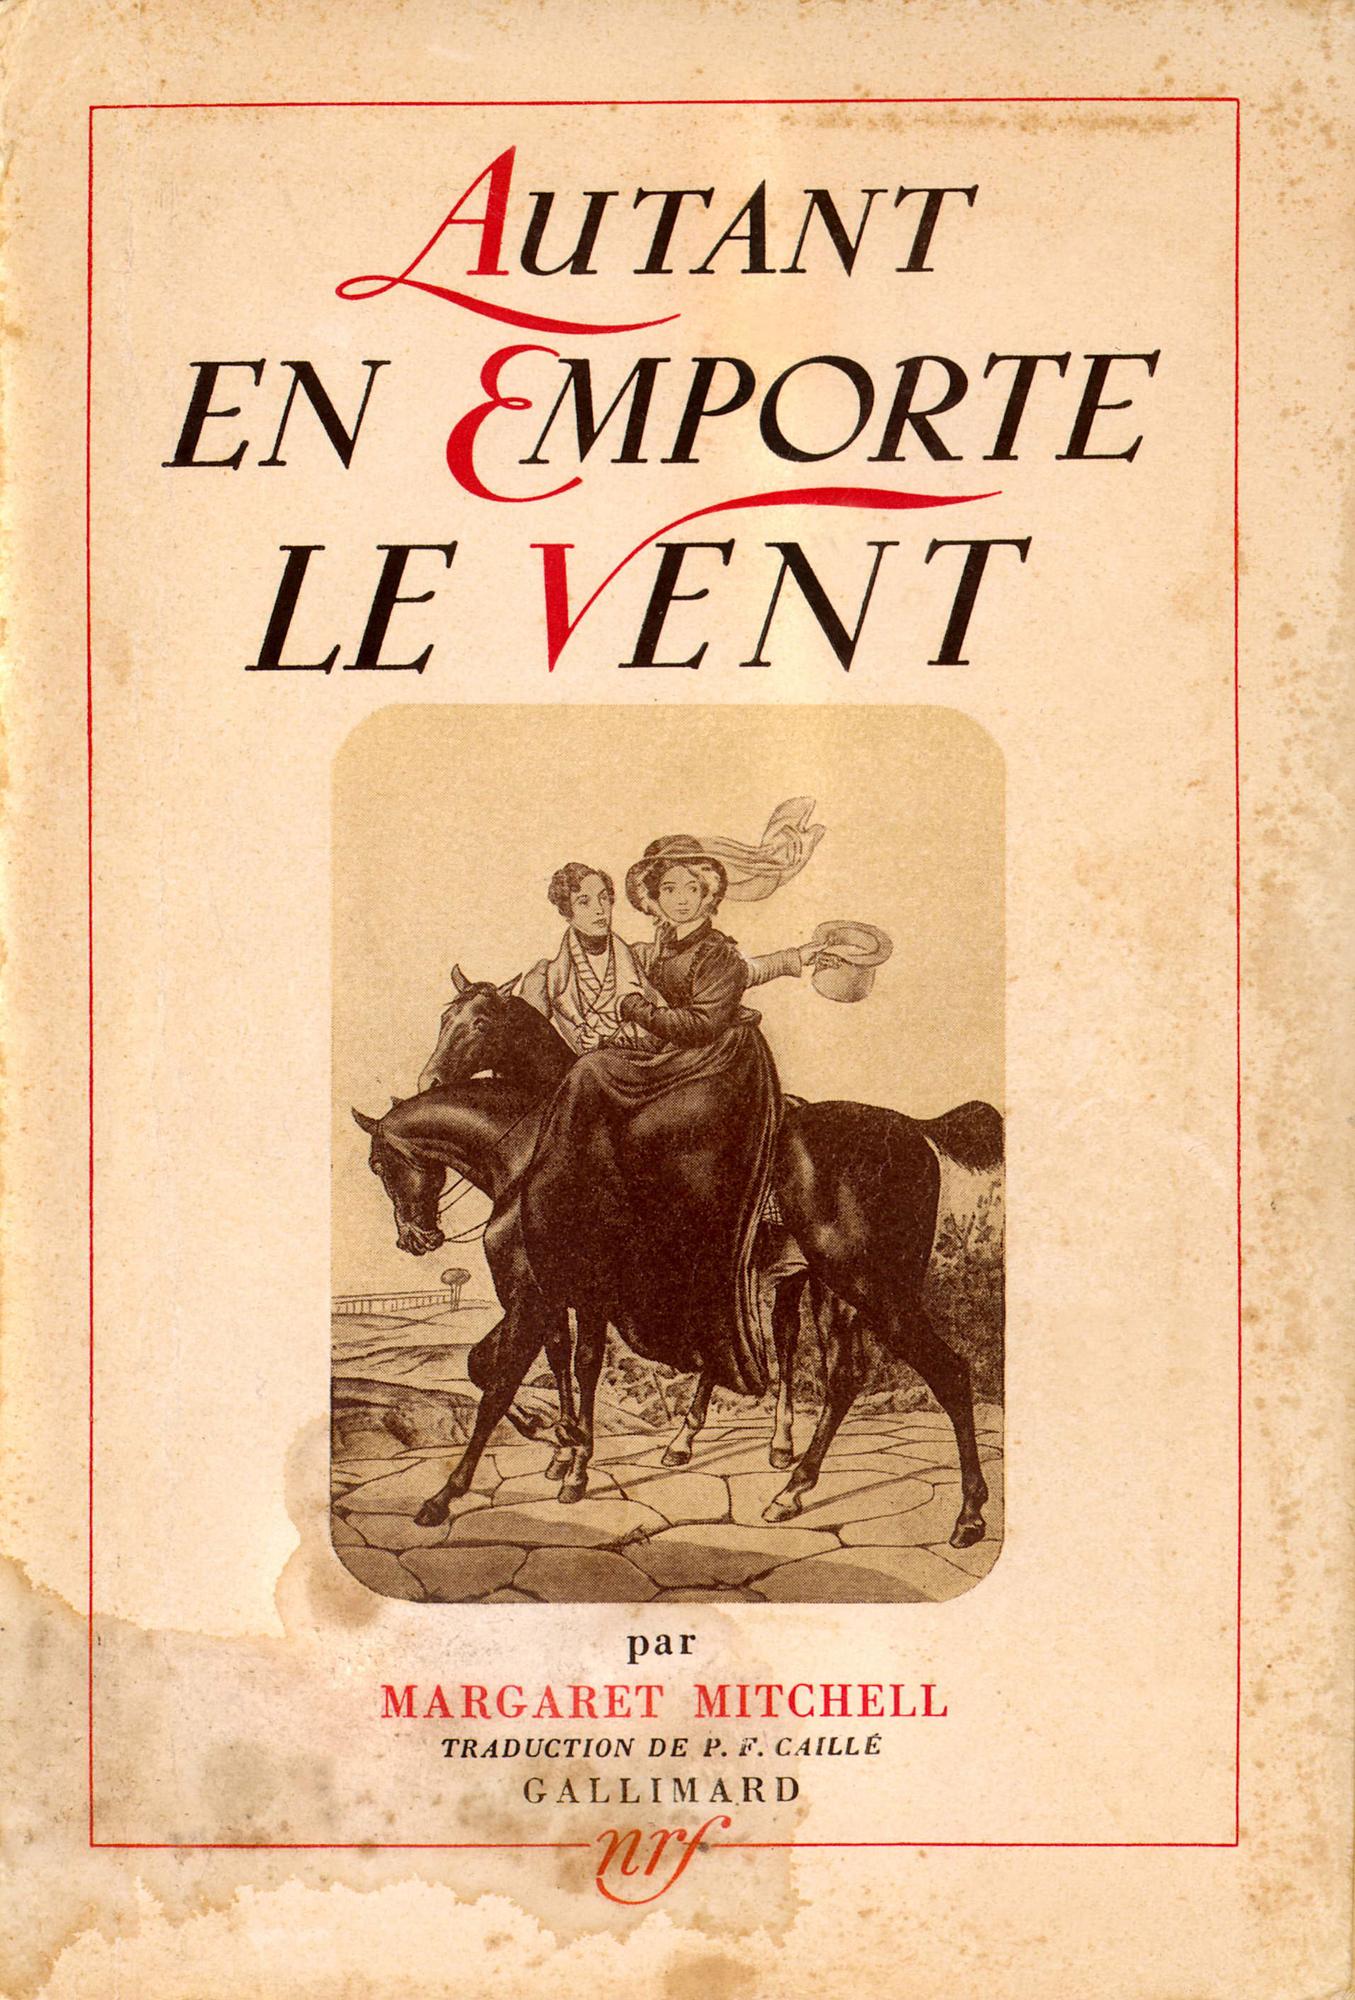 La couverture de la première édition de la version française de "Autant en emporte le vent", paru en 1938 aux éditions Gallimard. [Roger-Viollet via AFP]